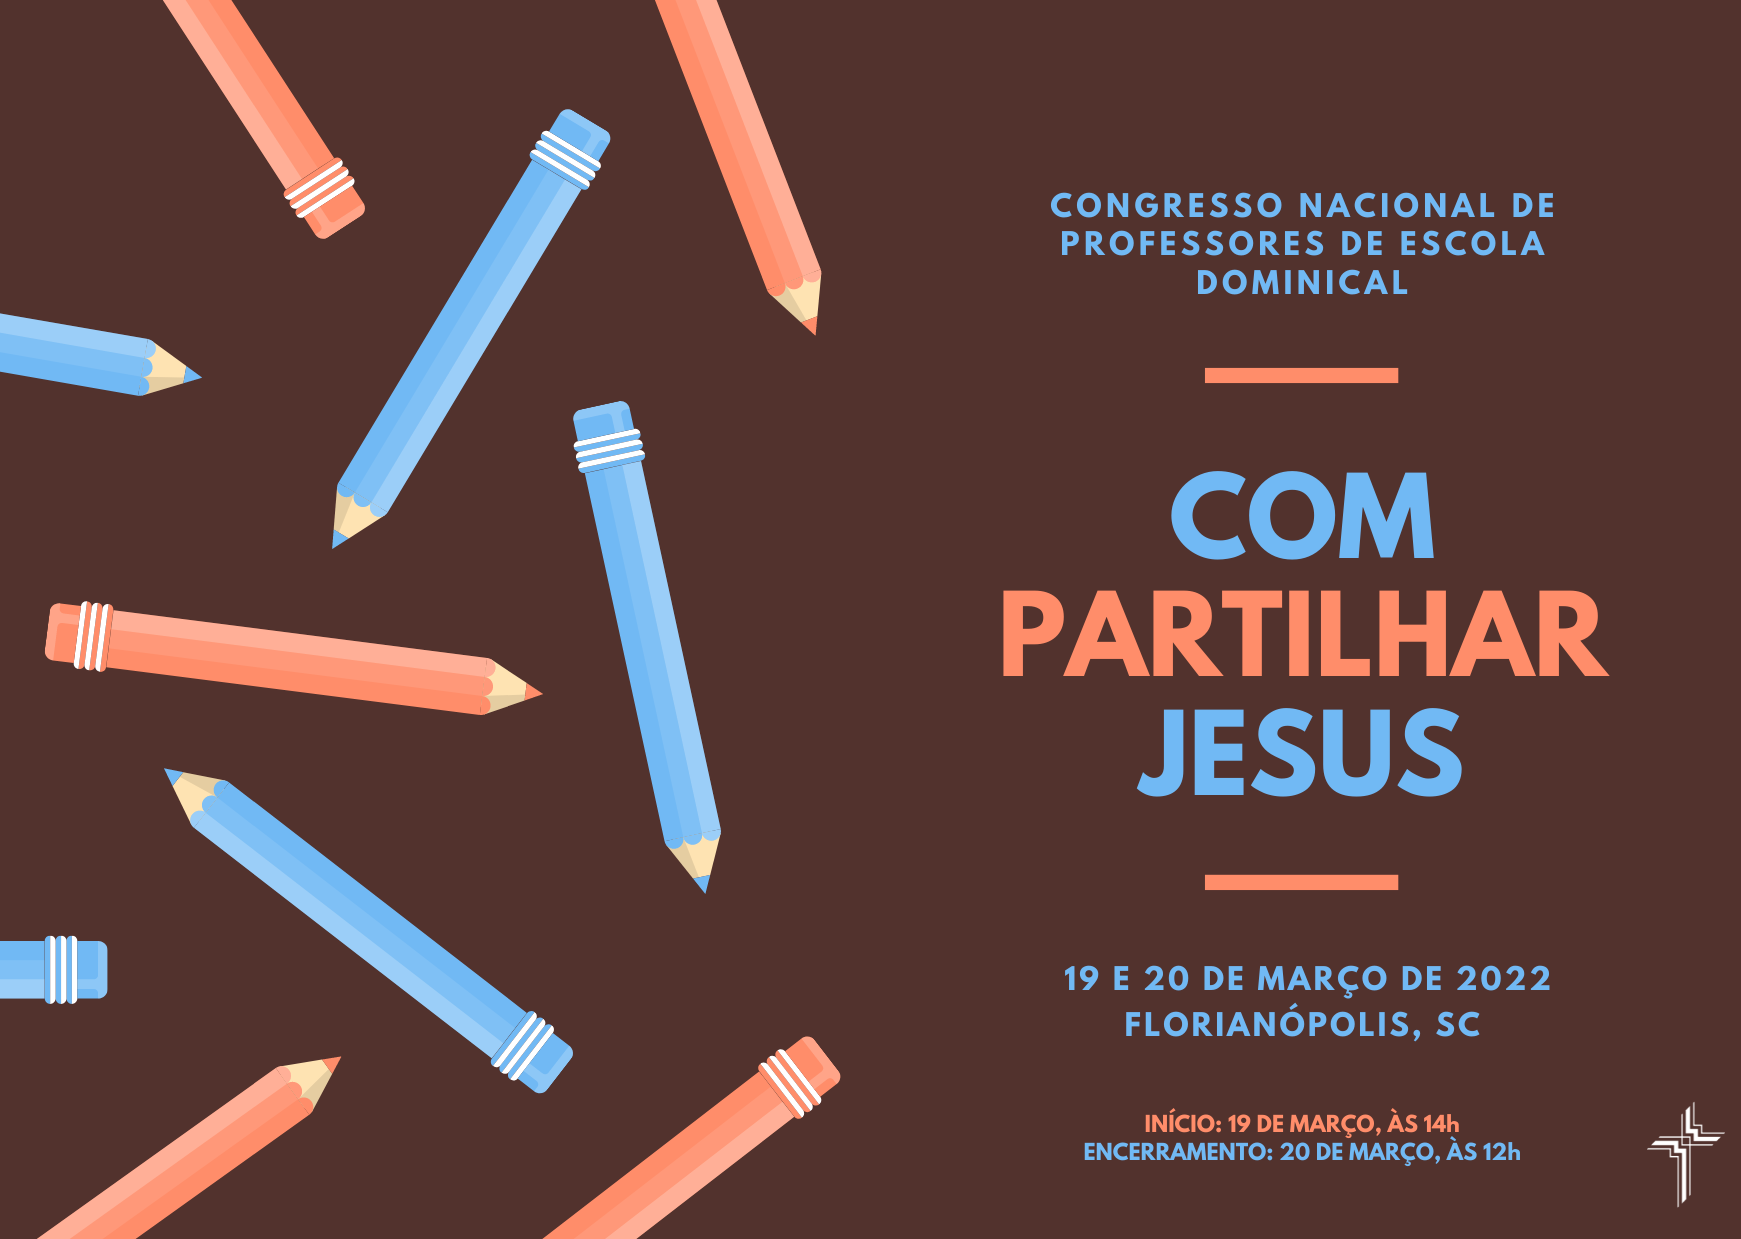 Congresso Nacional de Professores de Escola Dominical em Florianópolis, SC